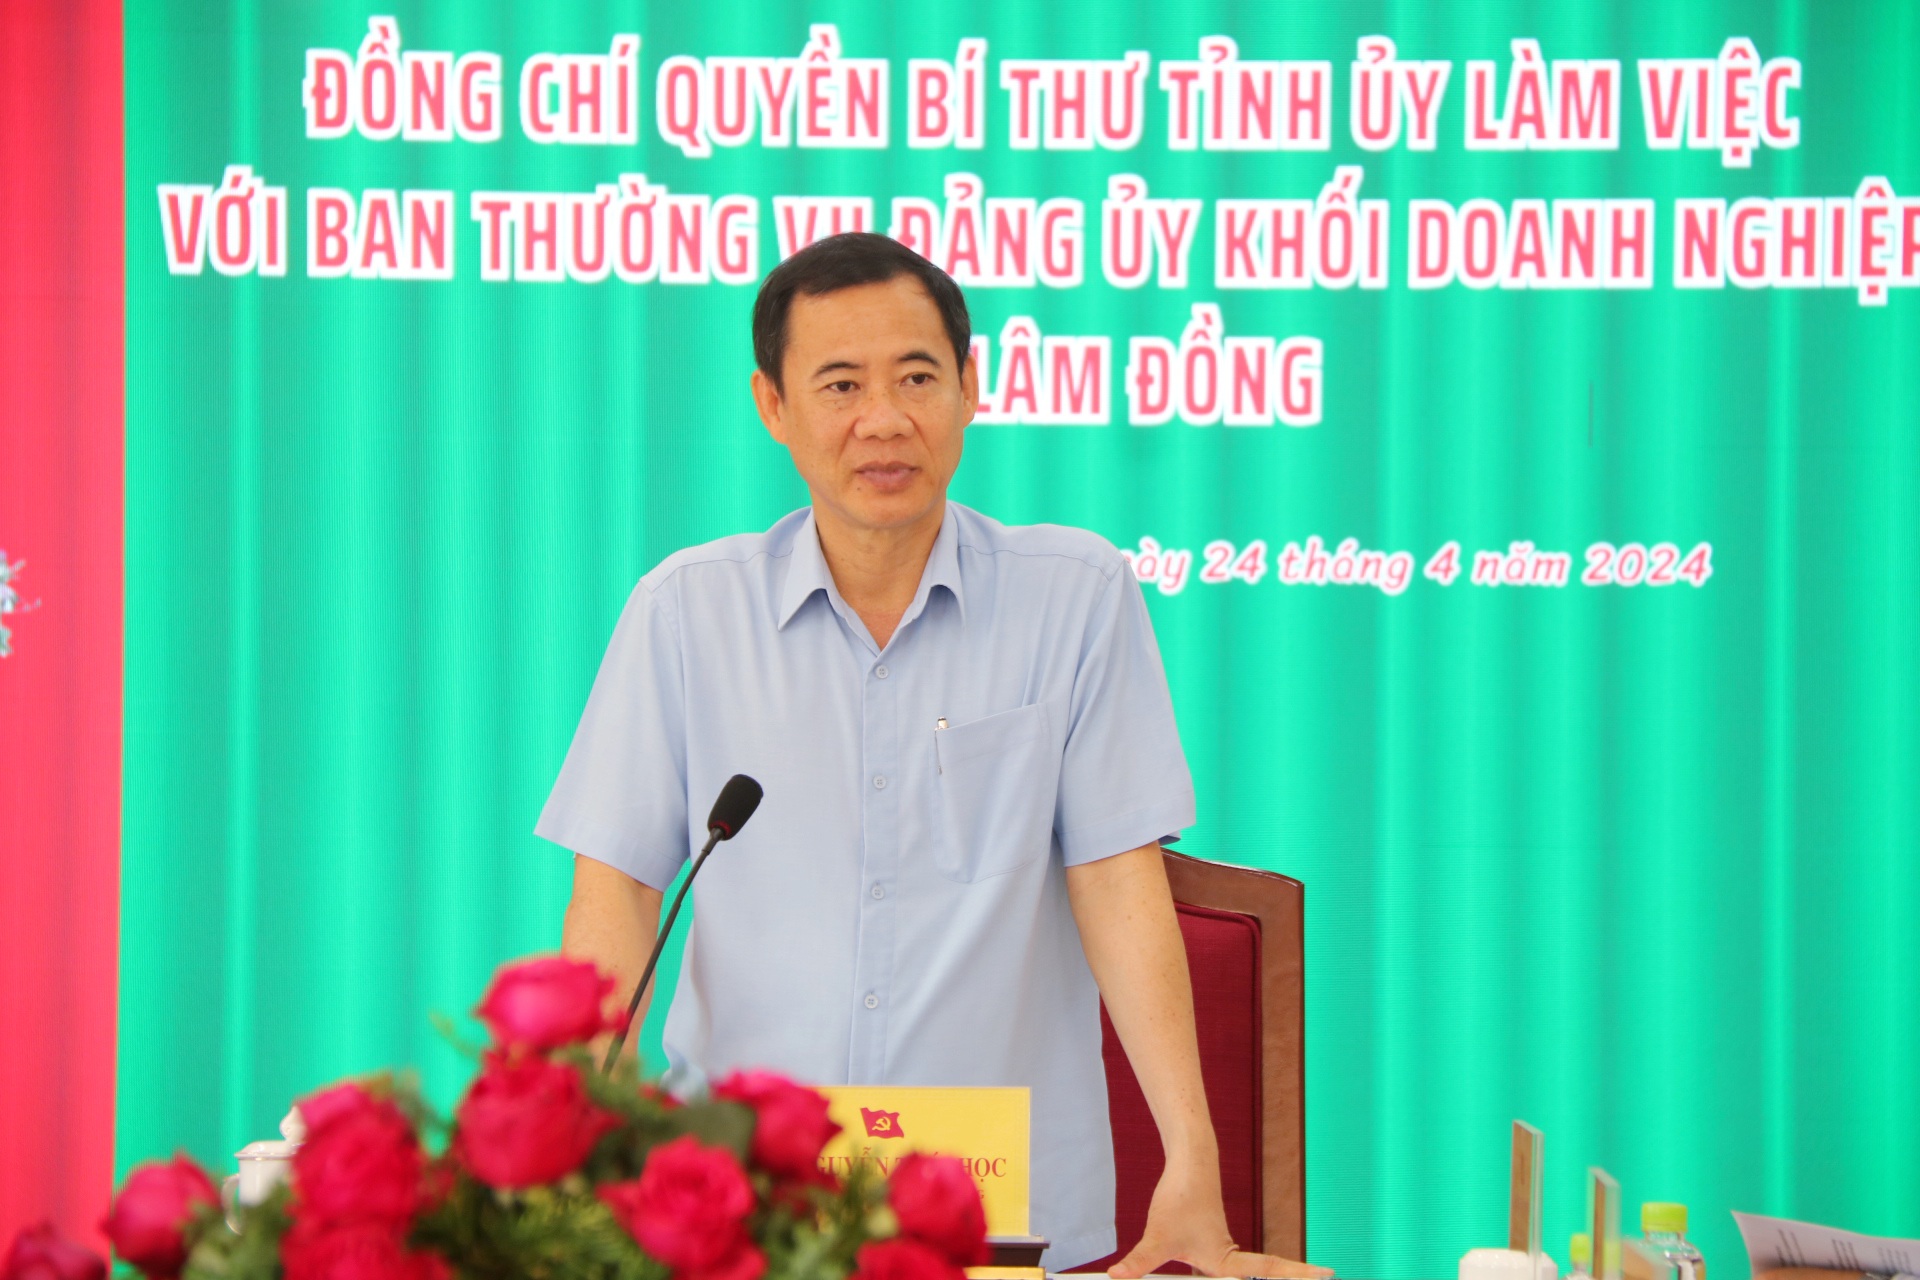 Đồng chí Nguyễn Thái Học - Quyền Bí thư Tỉnh ủy phát biểu chỉ đạo tại buổi làm việc
